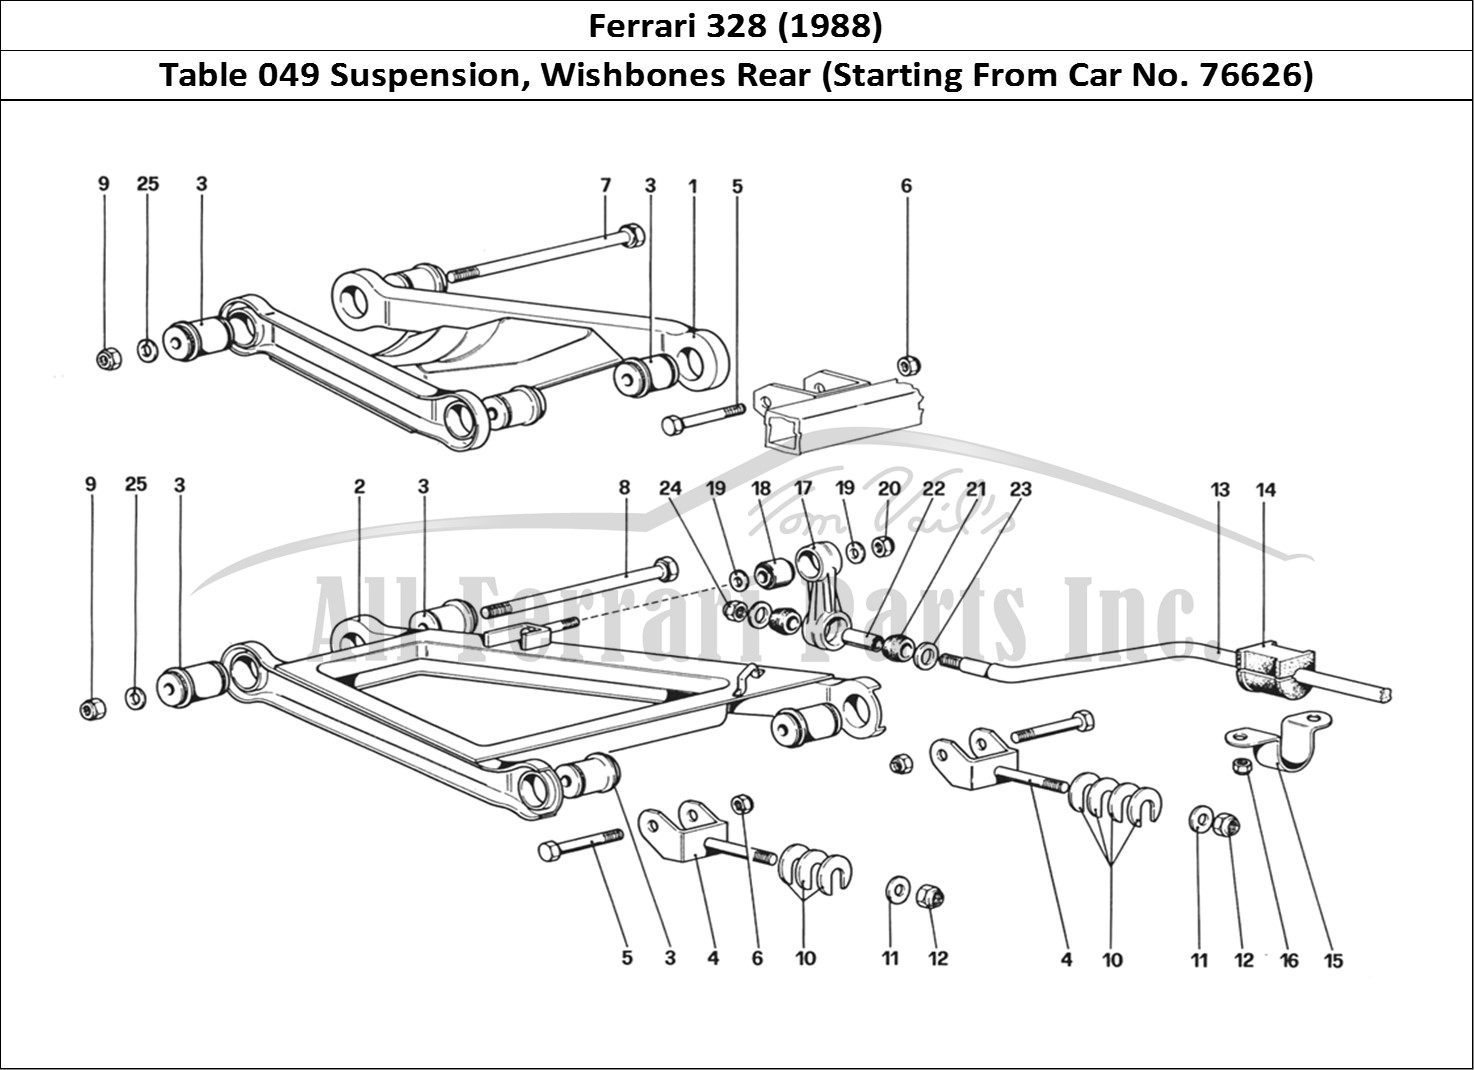 Ferrari Parts Ferrari 328 (1988) Page 049 Rear Suspension - Wishbon